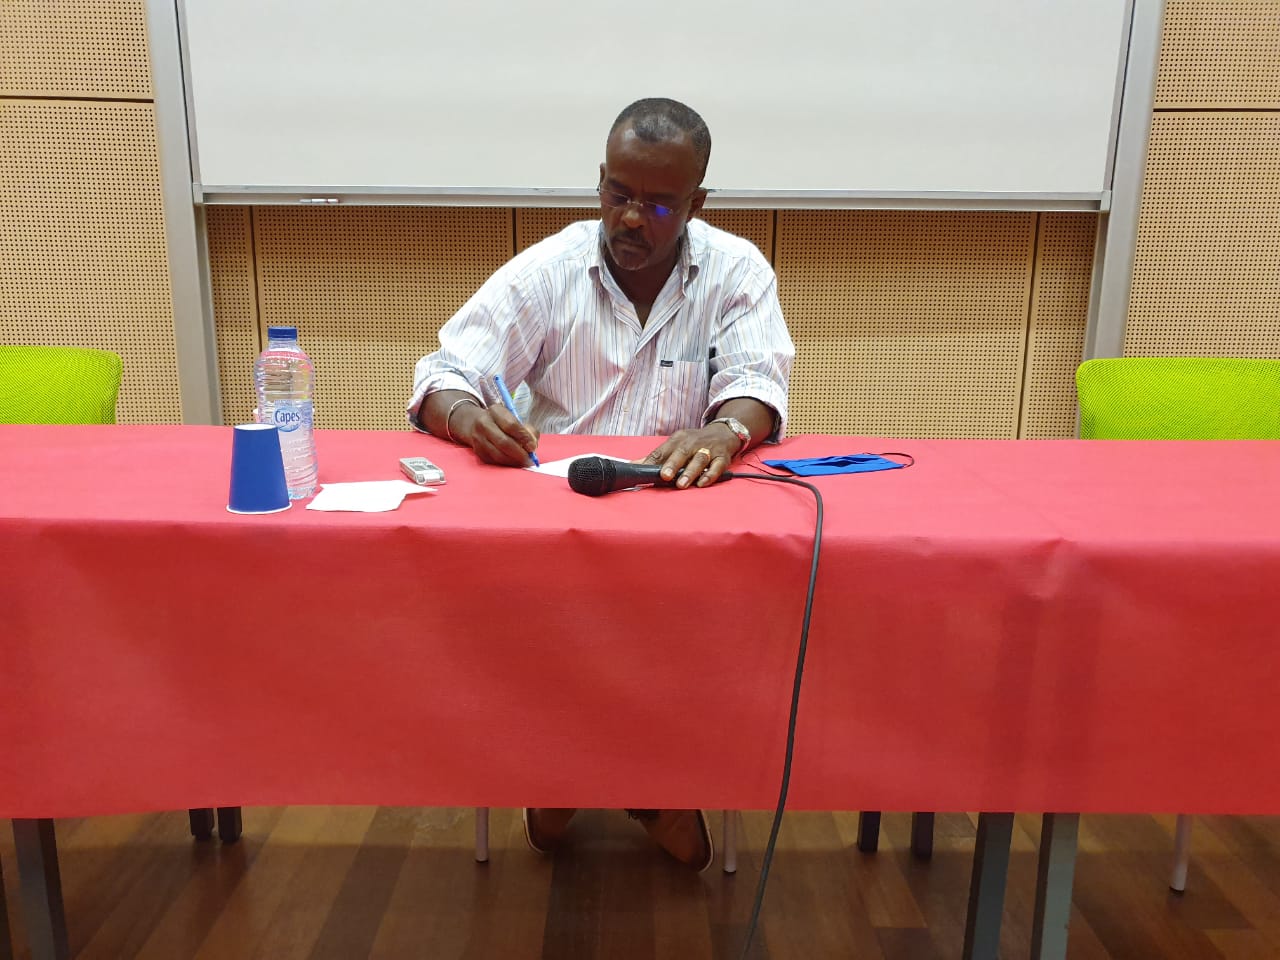     Ary Chalus convoqué devant le tribunal correctionnel de Basse-Terre

